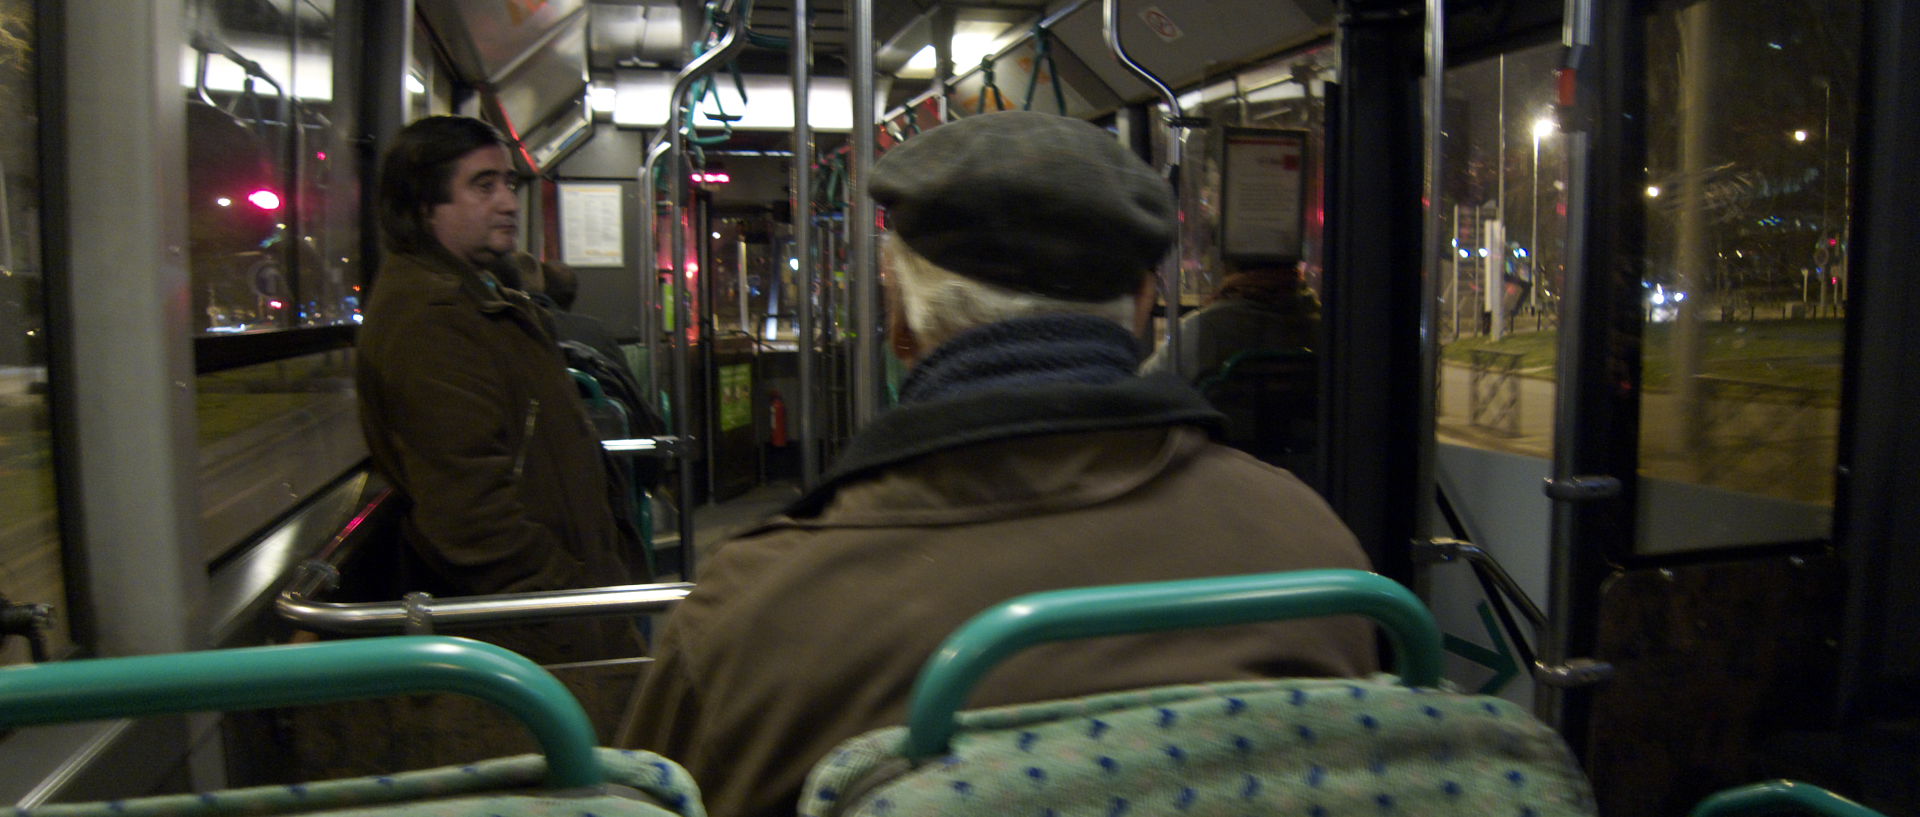 Mardi 24 février 2009, 20:46, autobus 258, en direction de Nanterre.